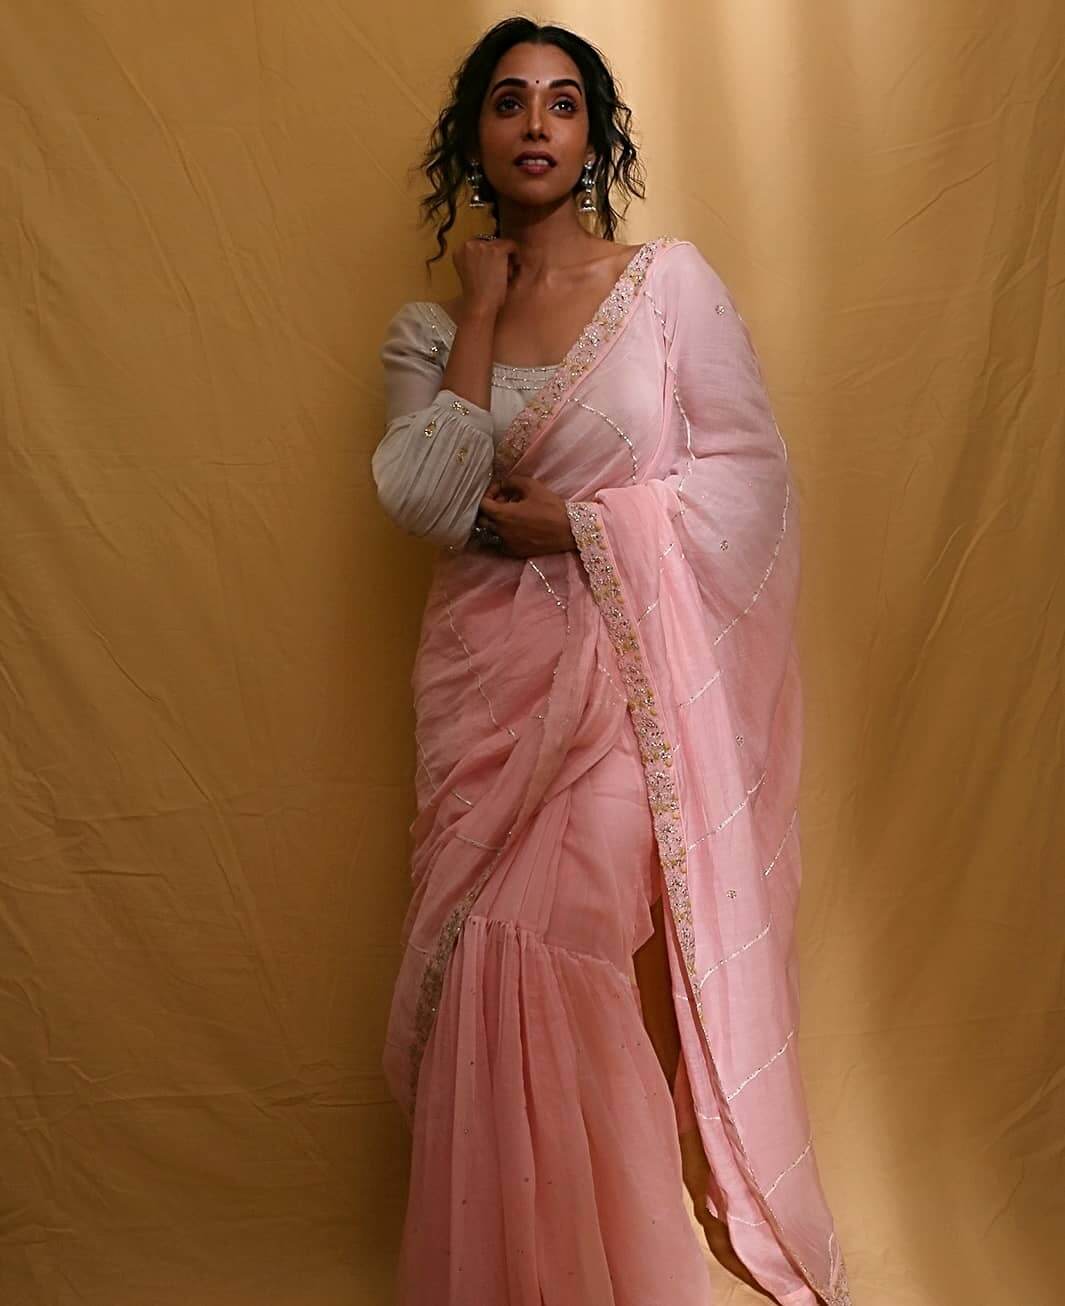 Anupriya Goenka Classic Look In Pink Saree